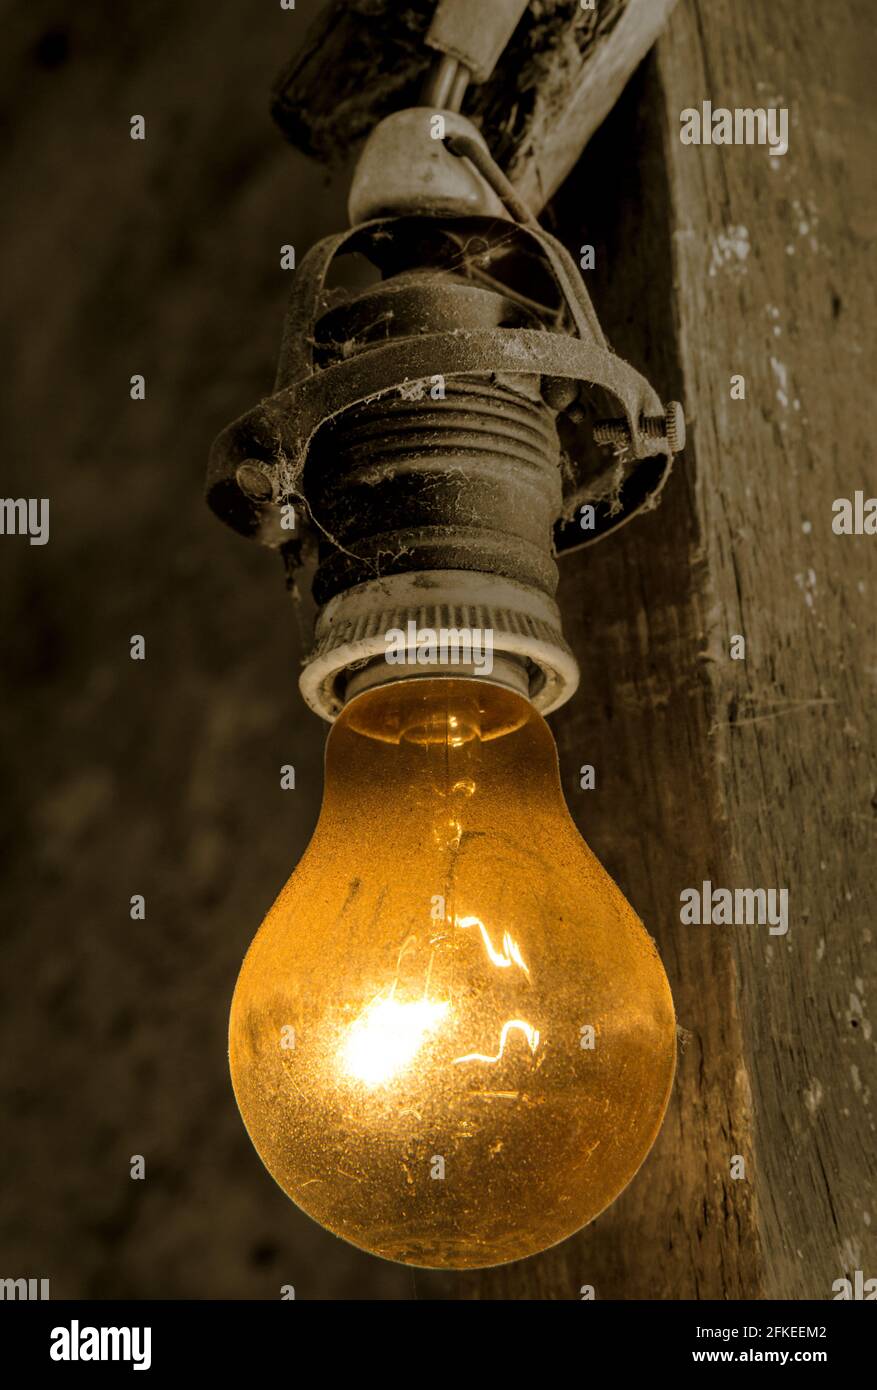 Eine alte Glühbirne, die an einem elektrischen Kabel an einem Strahl hängt  Stockfotografie - Alamy